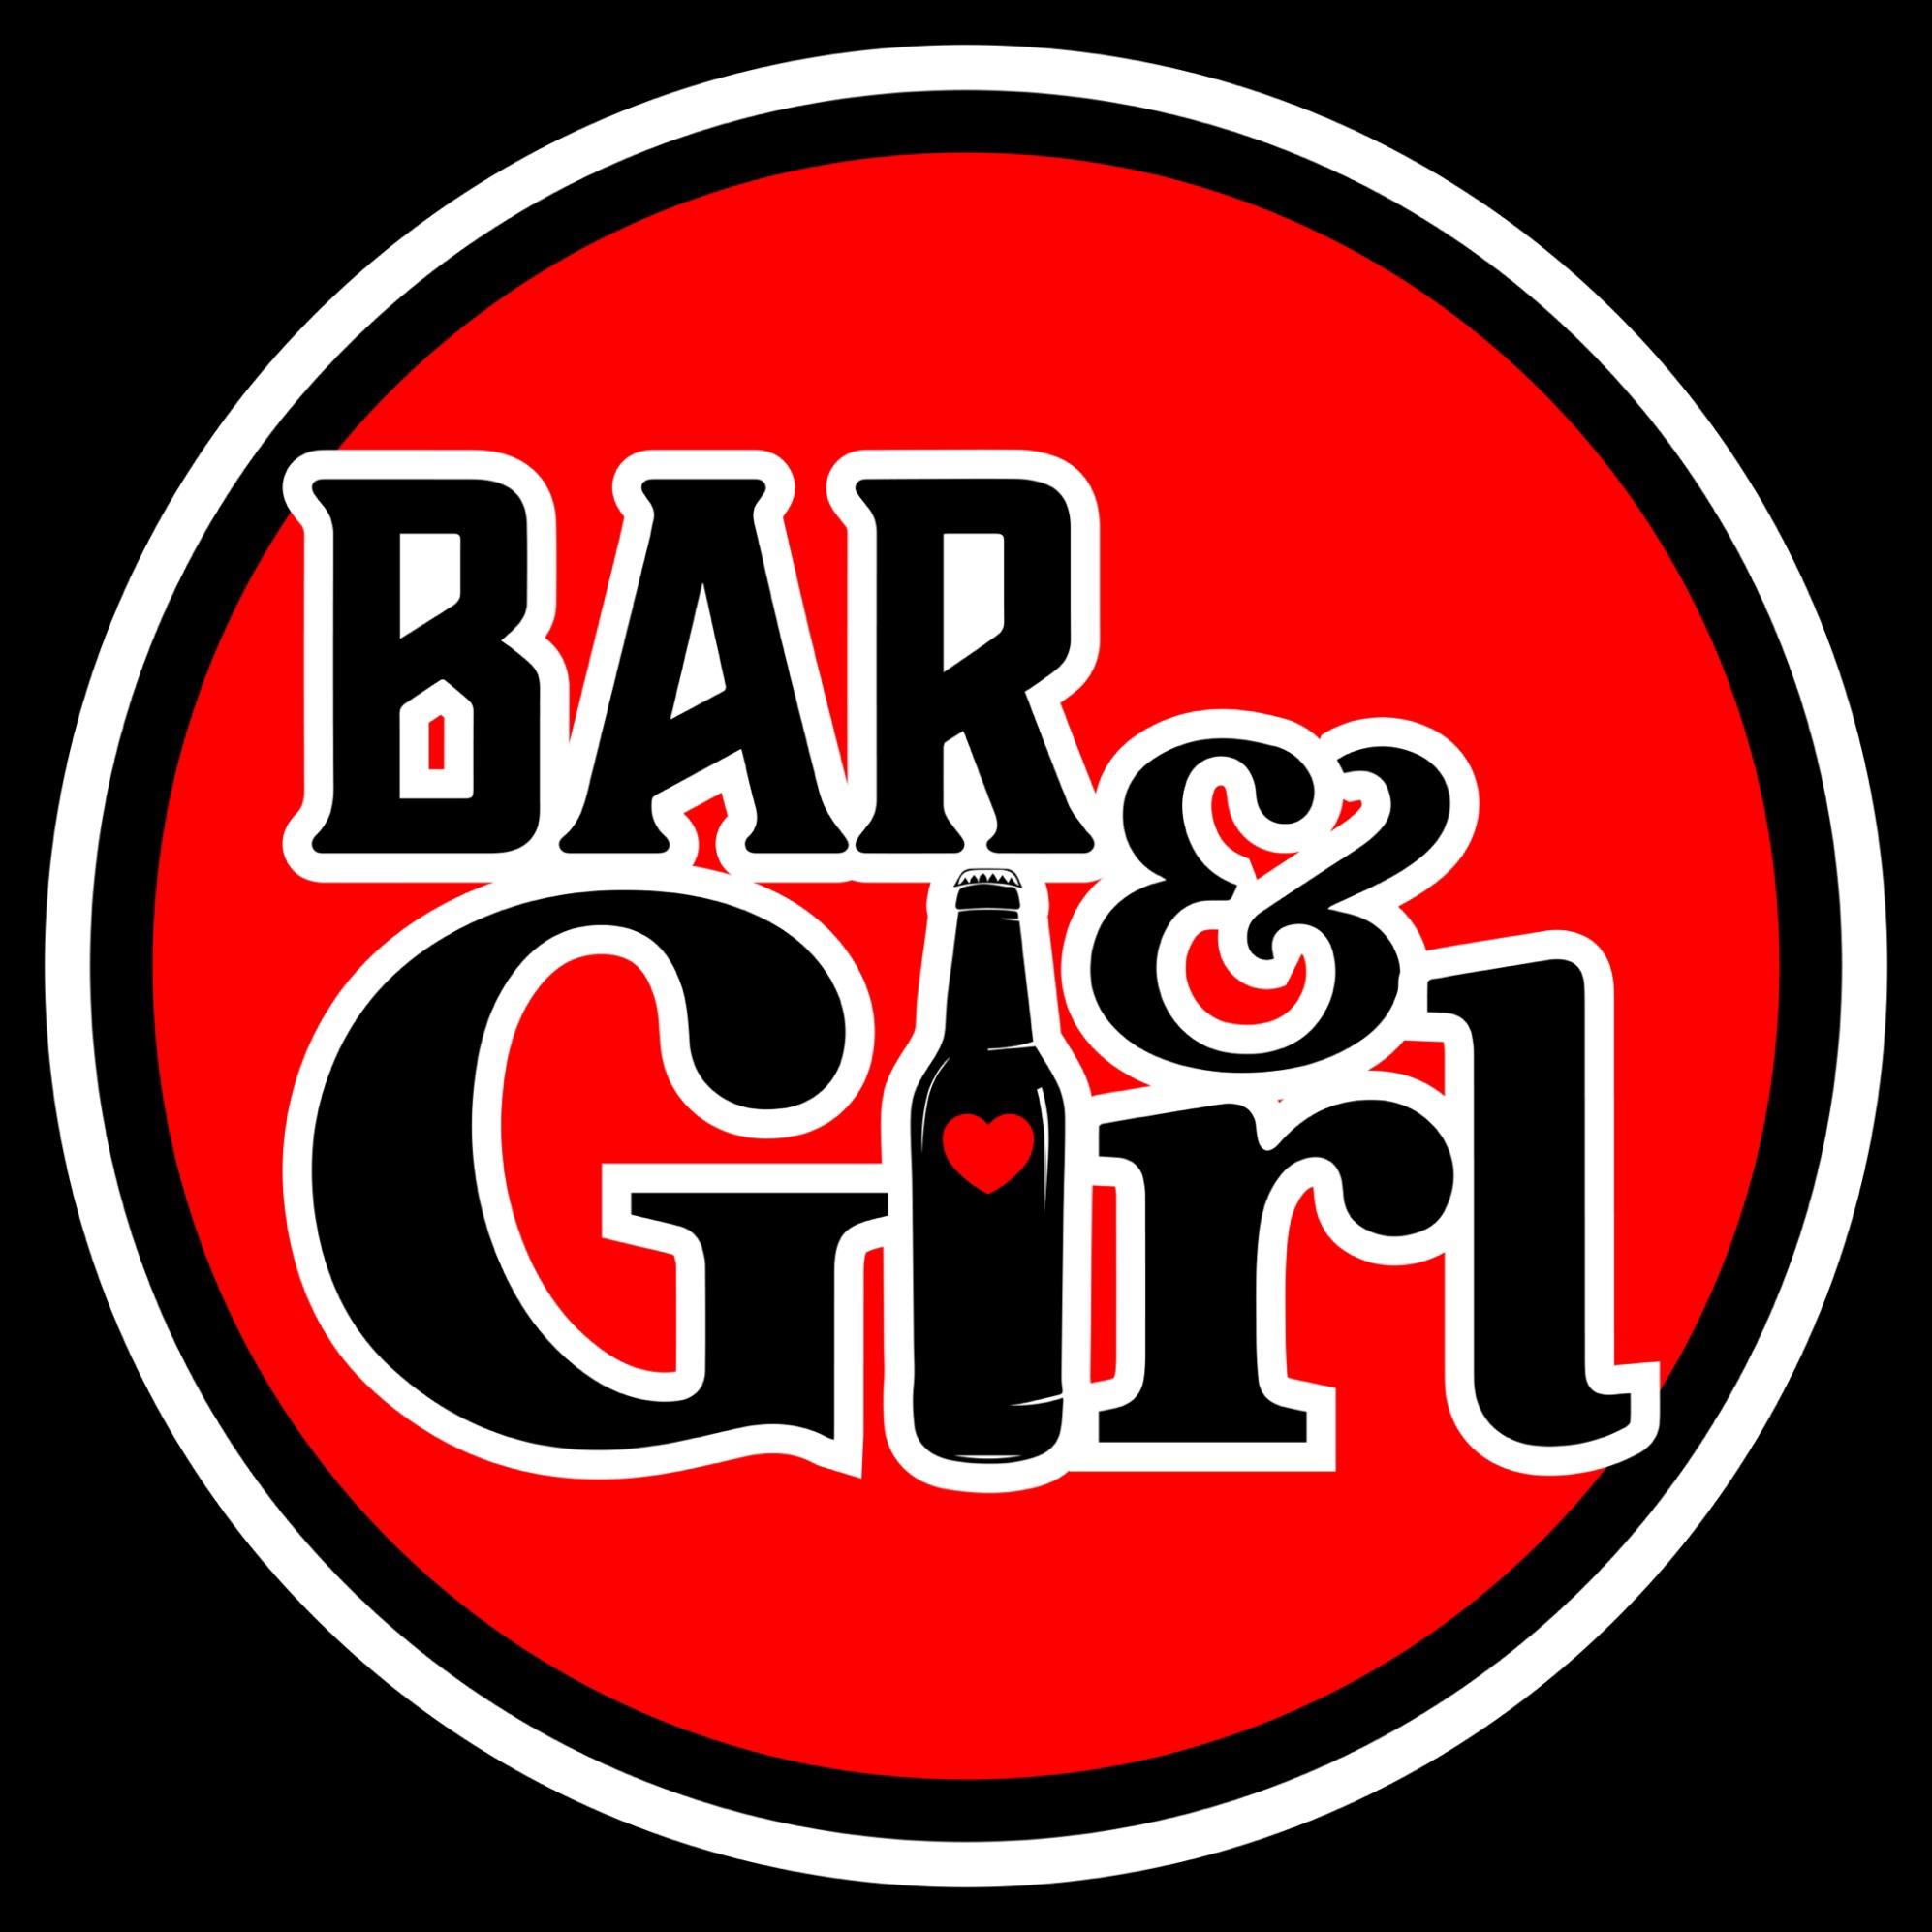 Bar & Girl